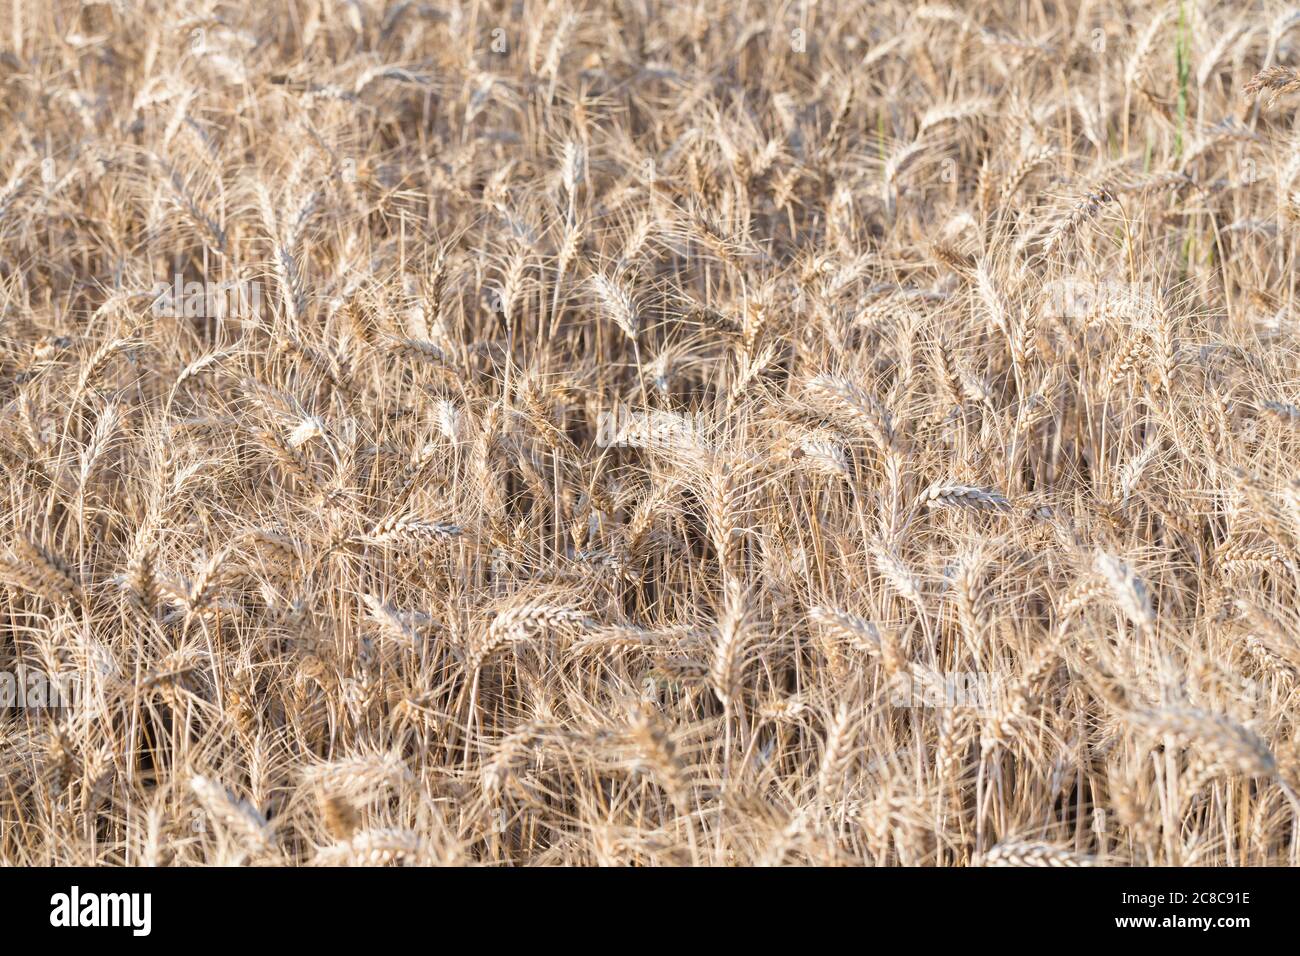 Wheat field, Italy Stock Photo